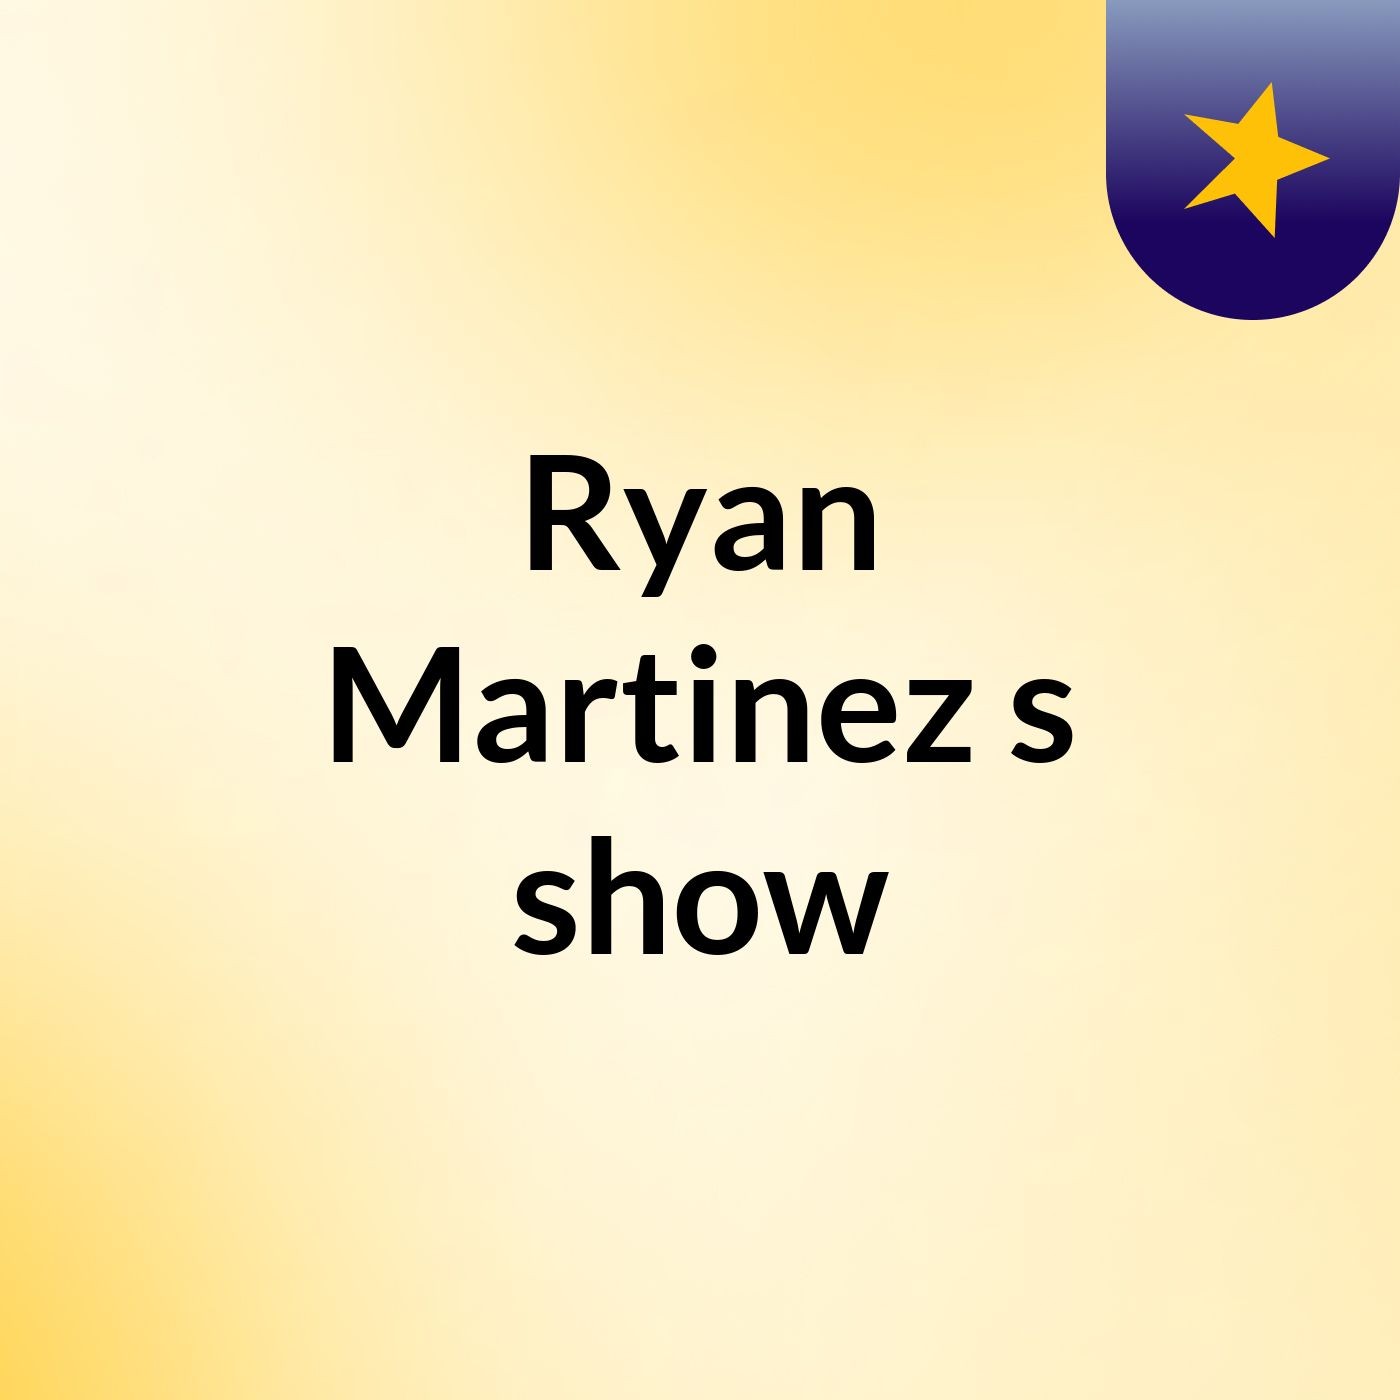 Episode 9 - Ryan Martinez's show